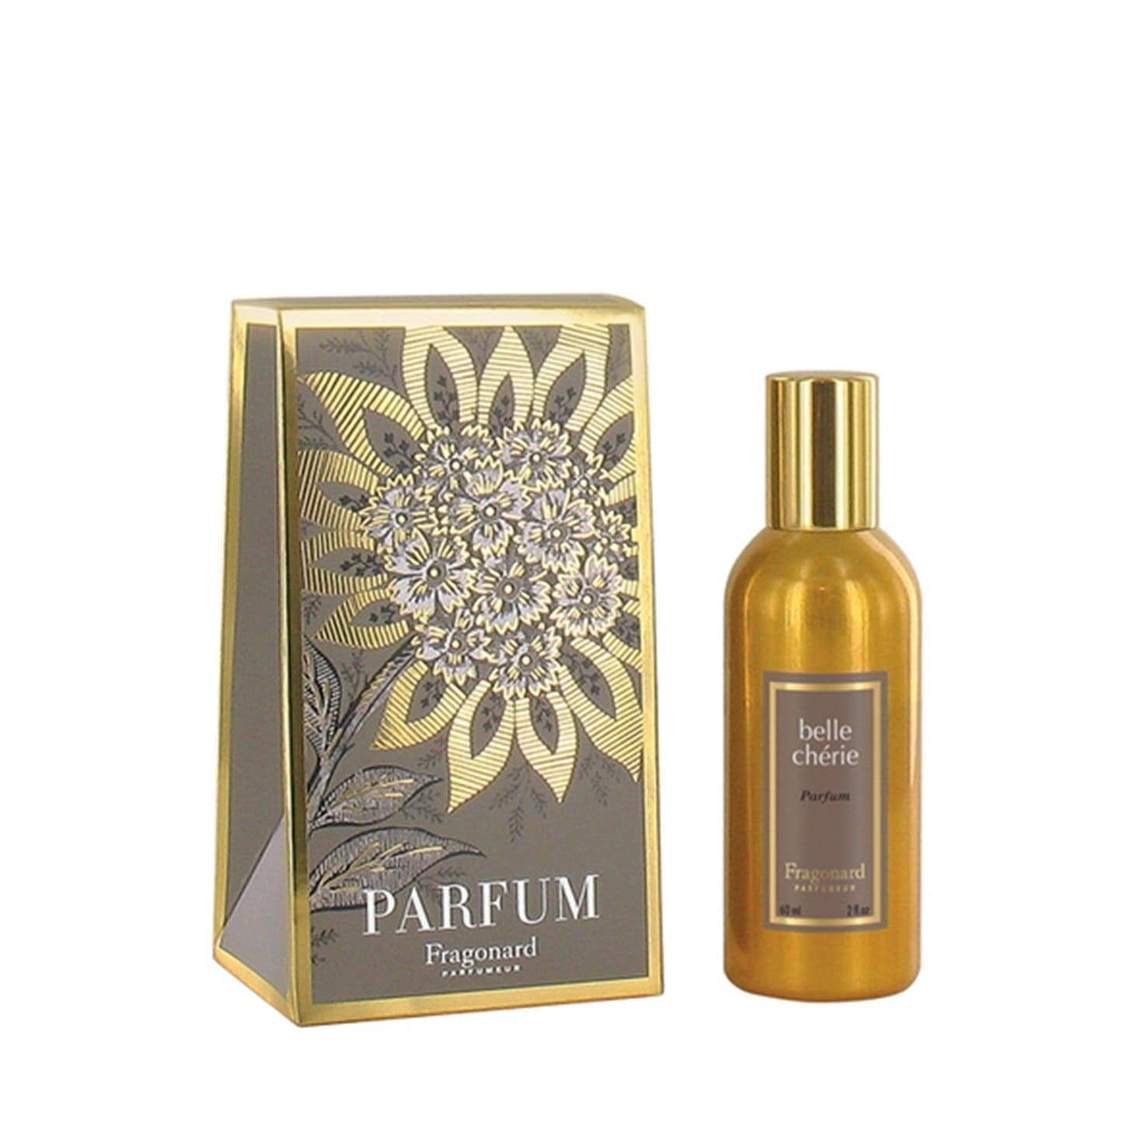 Fragonard Estagnon Belle Cherie Parfum Gold Bottle 60ml